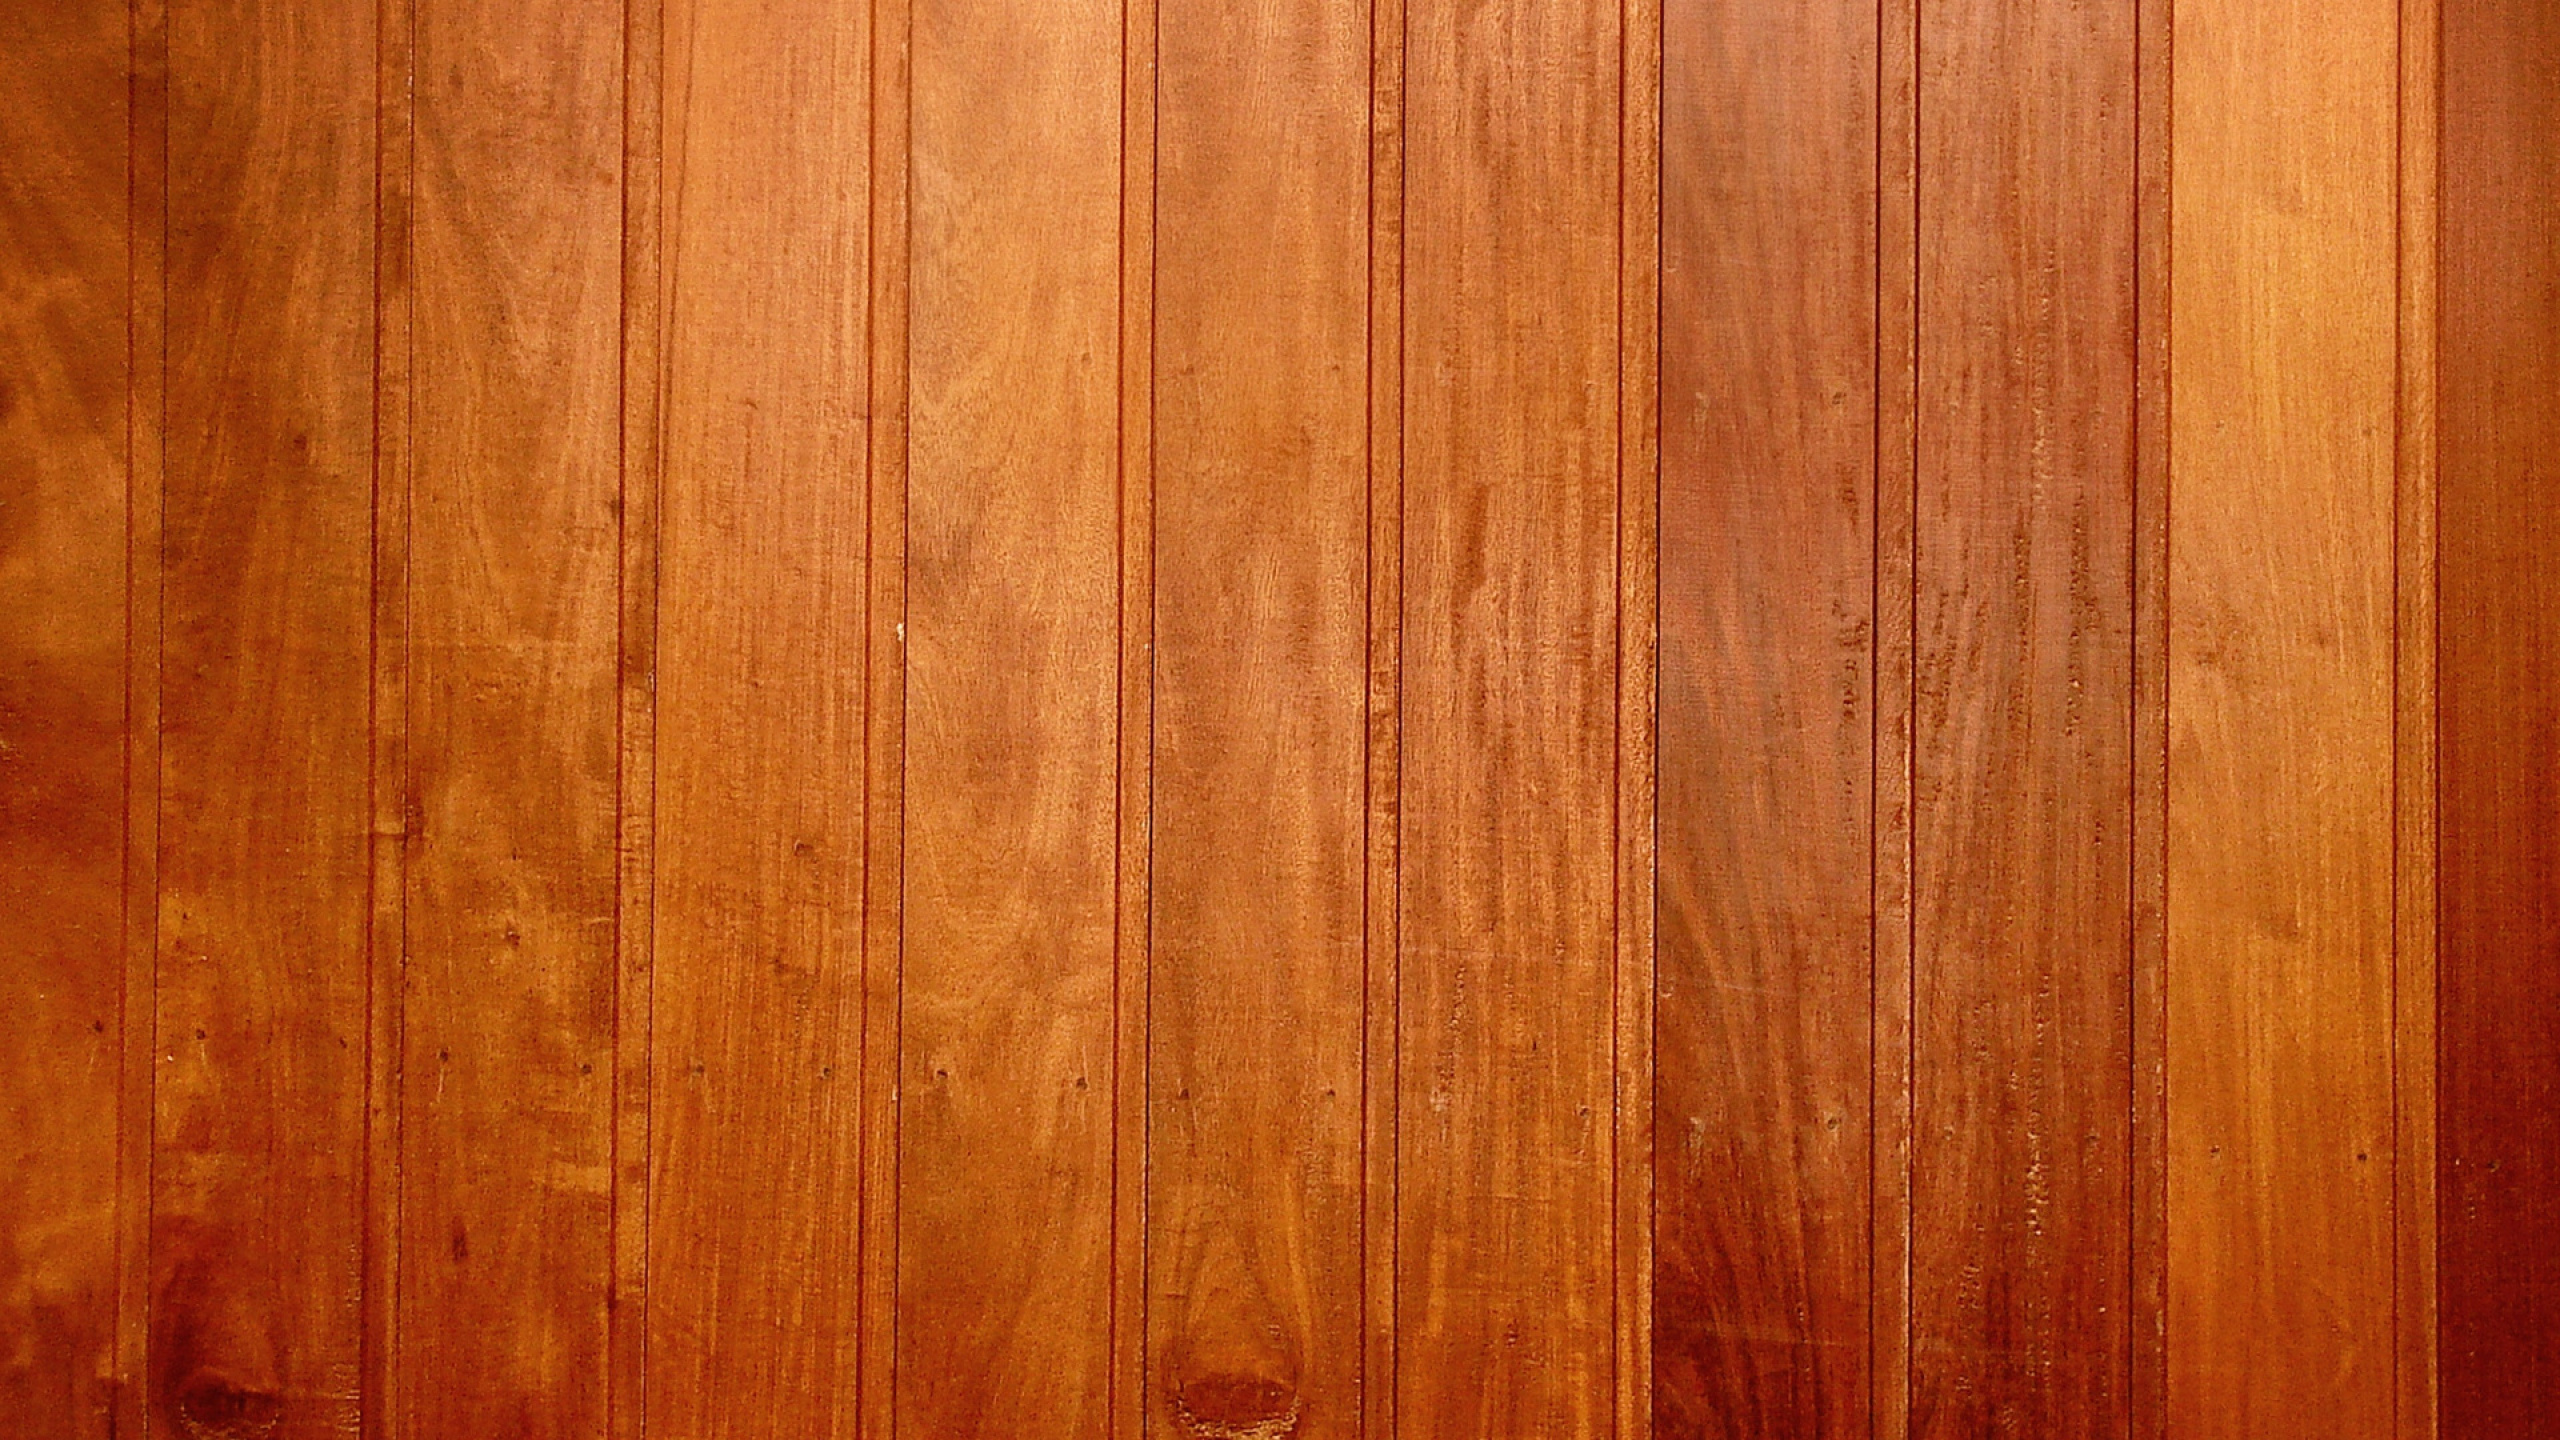 木, 木板, 硬木, 木地板, 木染色 壁纸 2560x1440 允许